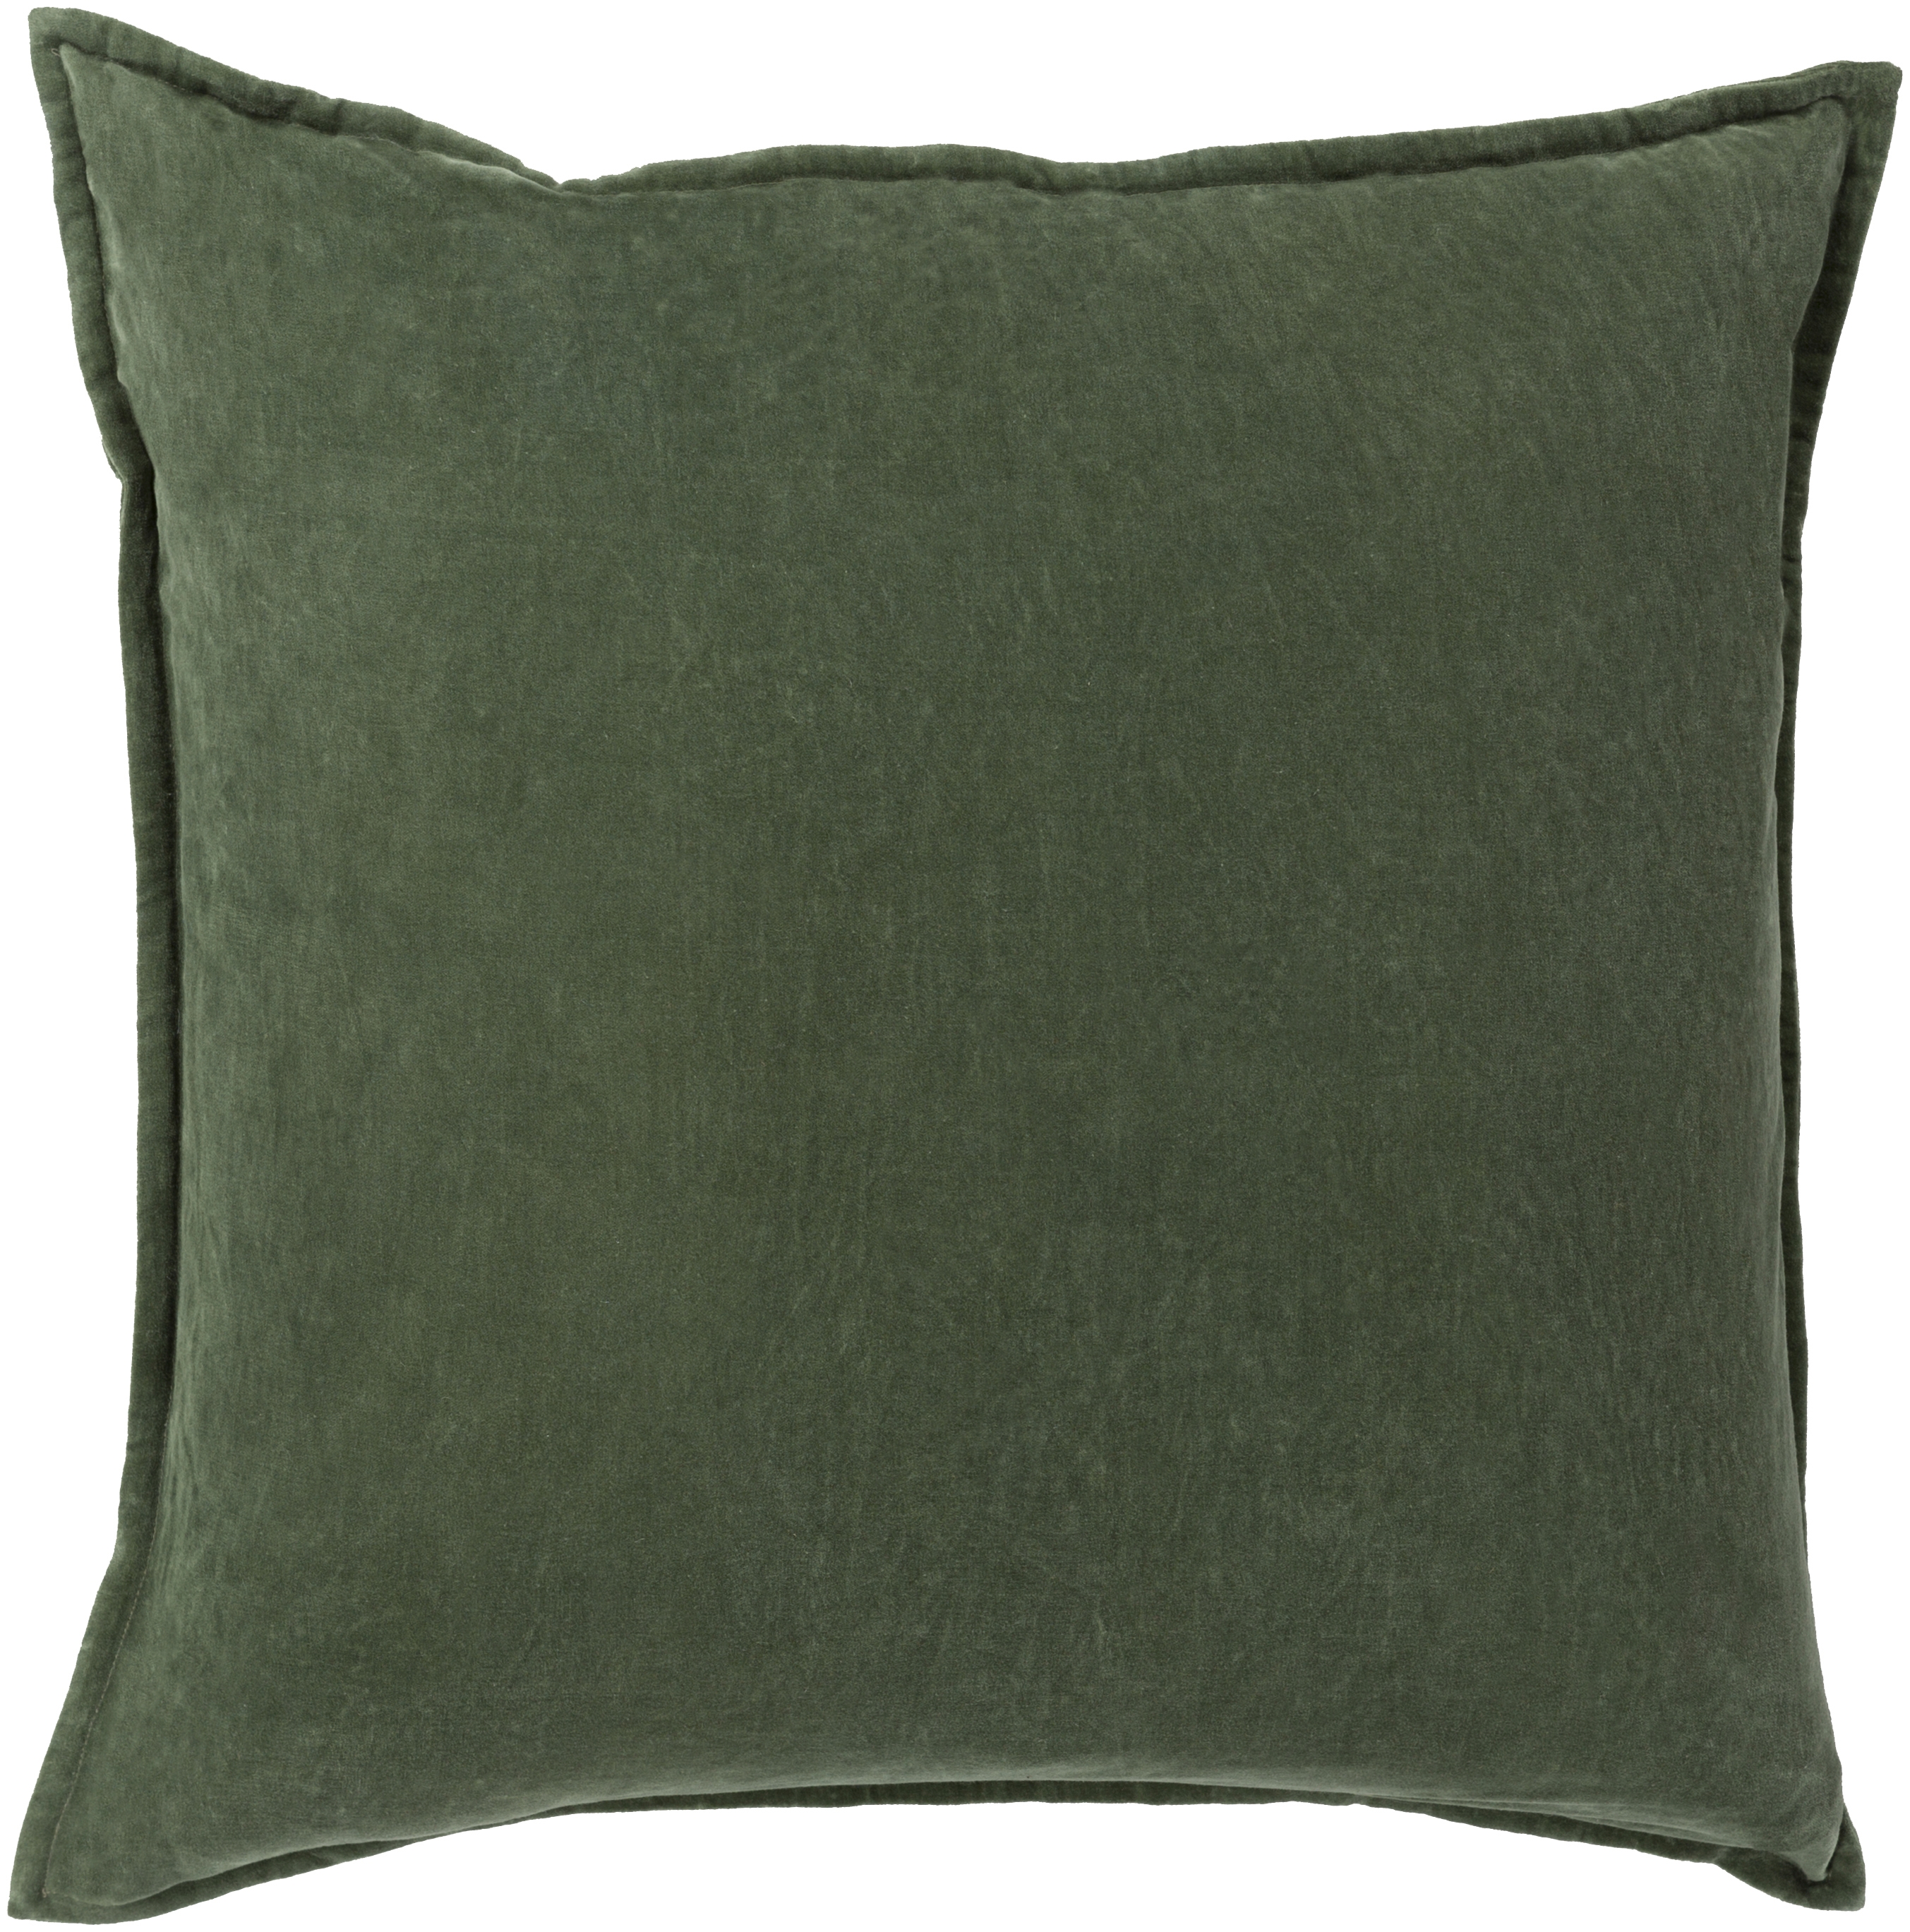 Cotton Velvet - CV-008 - 22" x 22" - pillow cover only - Image 0